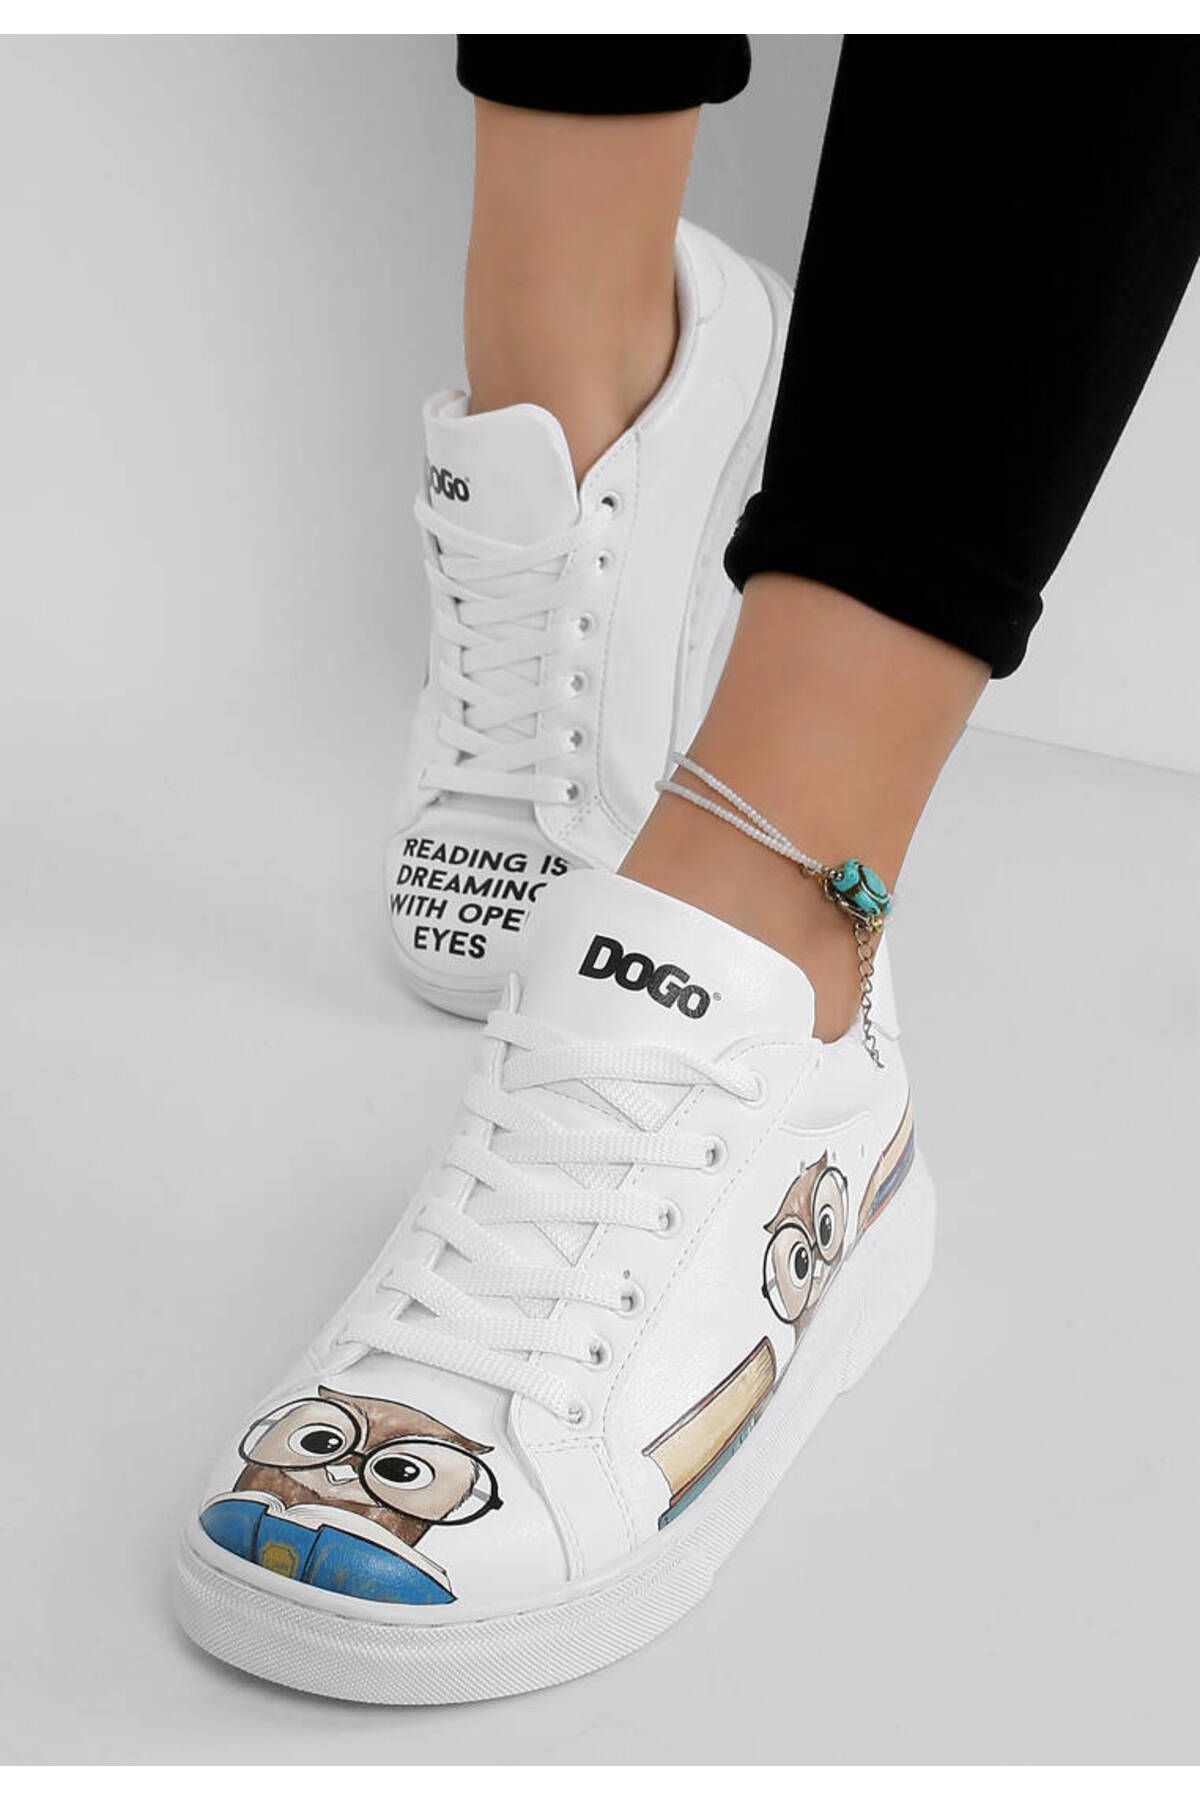 Dogo Kadın Vegan Deri Beyaz Sneakers - The Wise Owl Tasarım